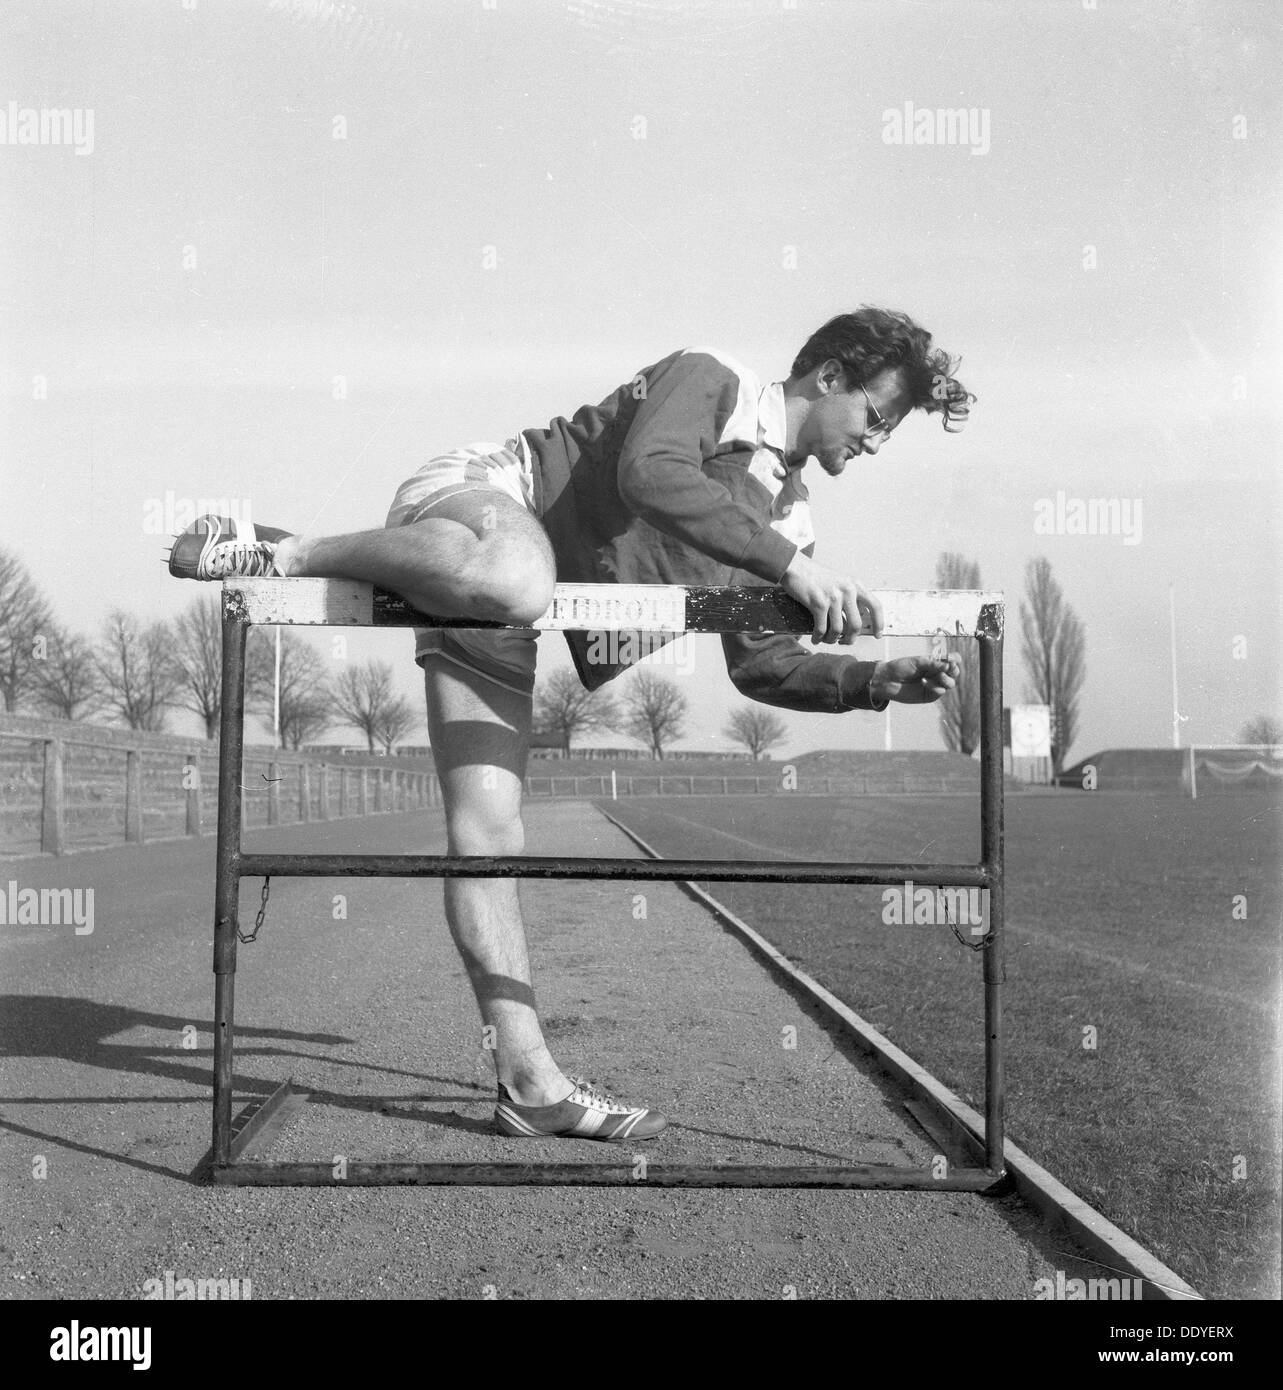 Adjusting a hurdle on an athletics track, Landskrona, Sweden, 1955. Artist: Unknown Stock Photo